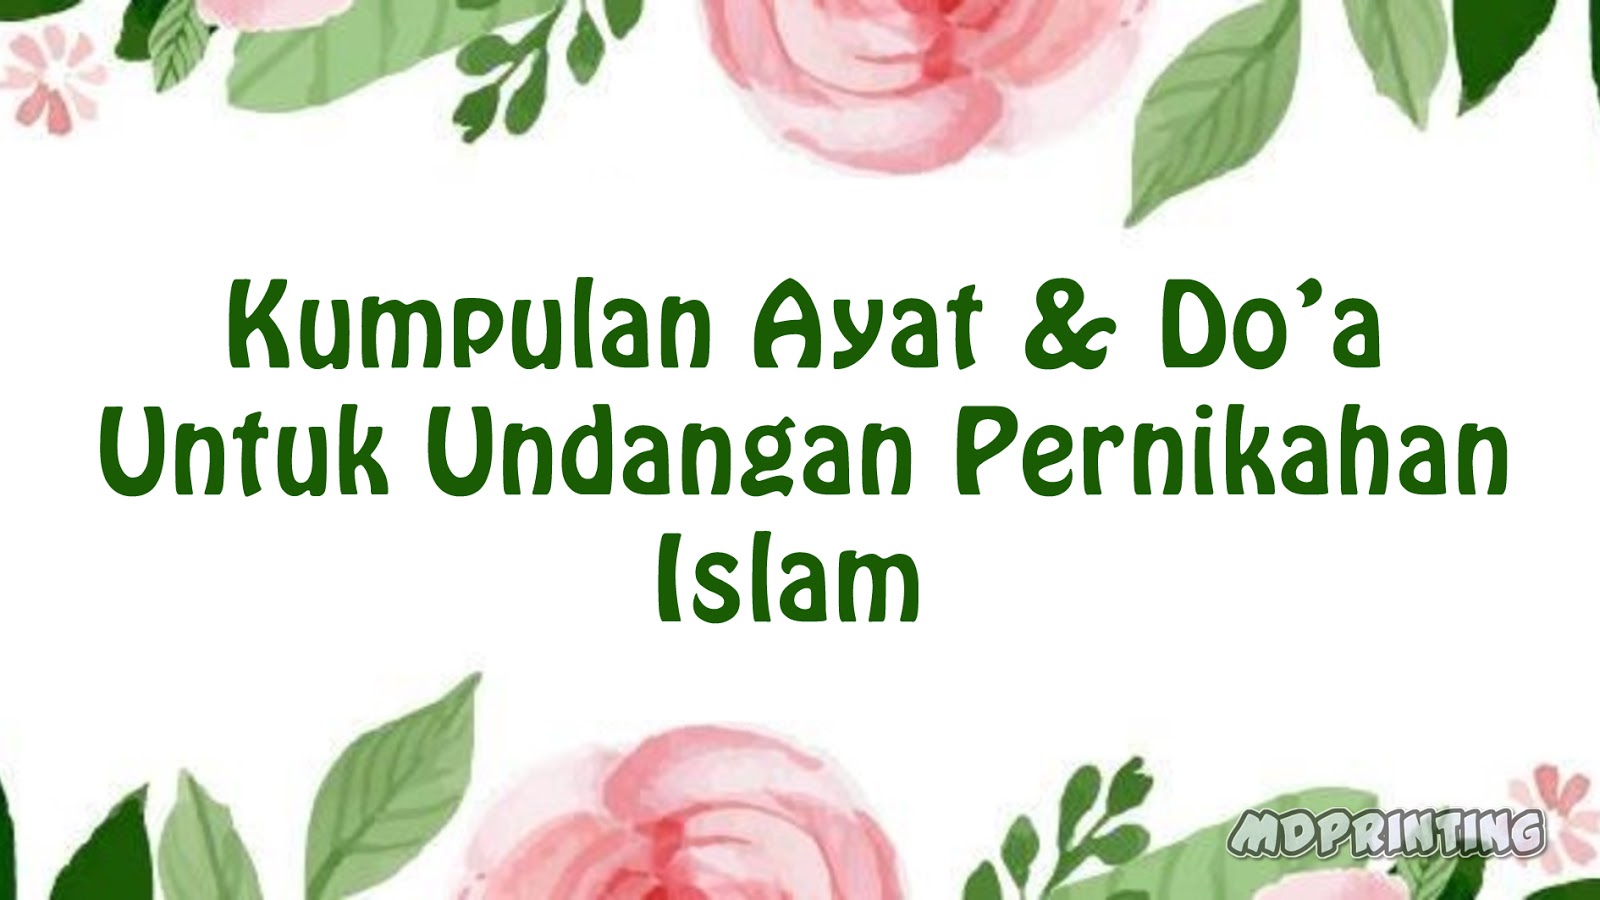 Kumpulan Ayat Dan Do A Untuk Undangan Pernikahan Islami Mdprinting